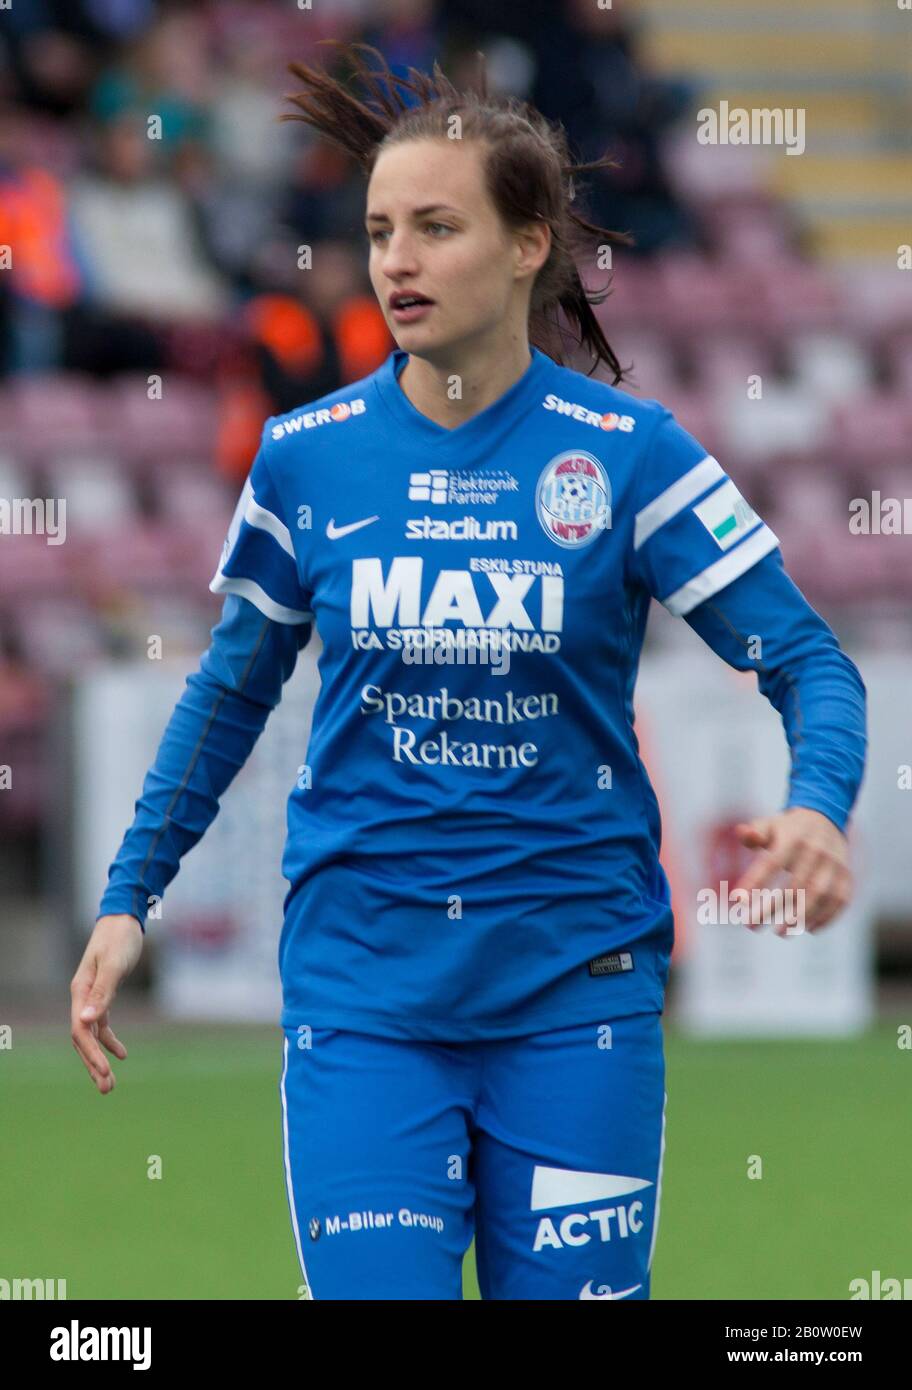 Nathalie BÖRN, defensora sueca de fútbol de Rosengård y del equipo nacional Foto de stock